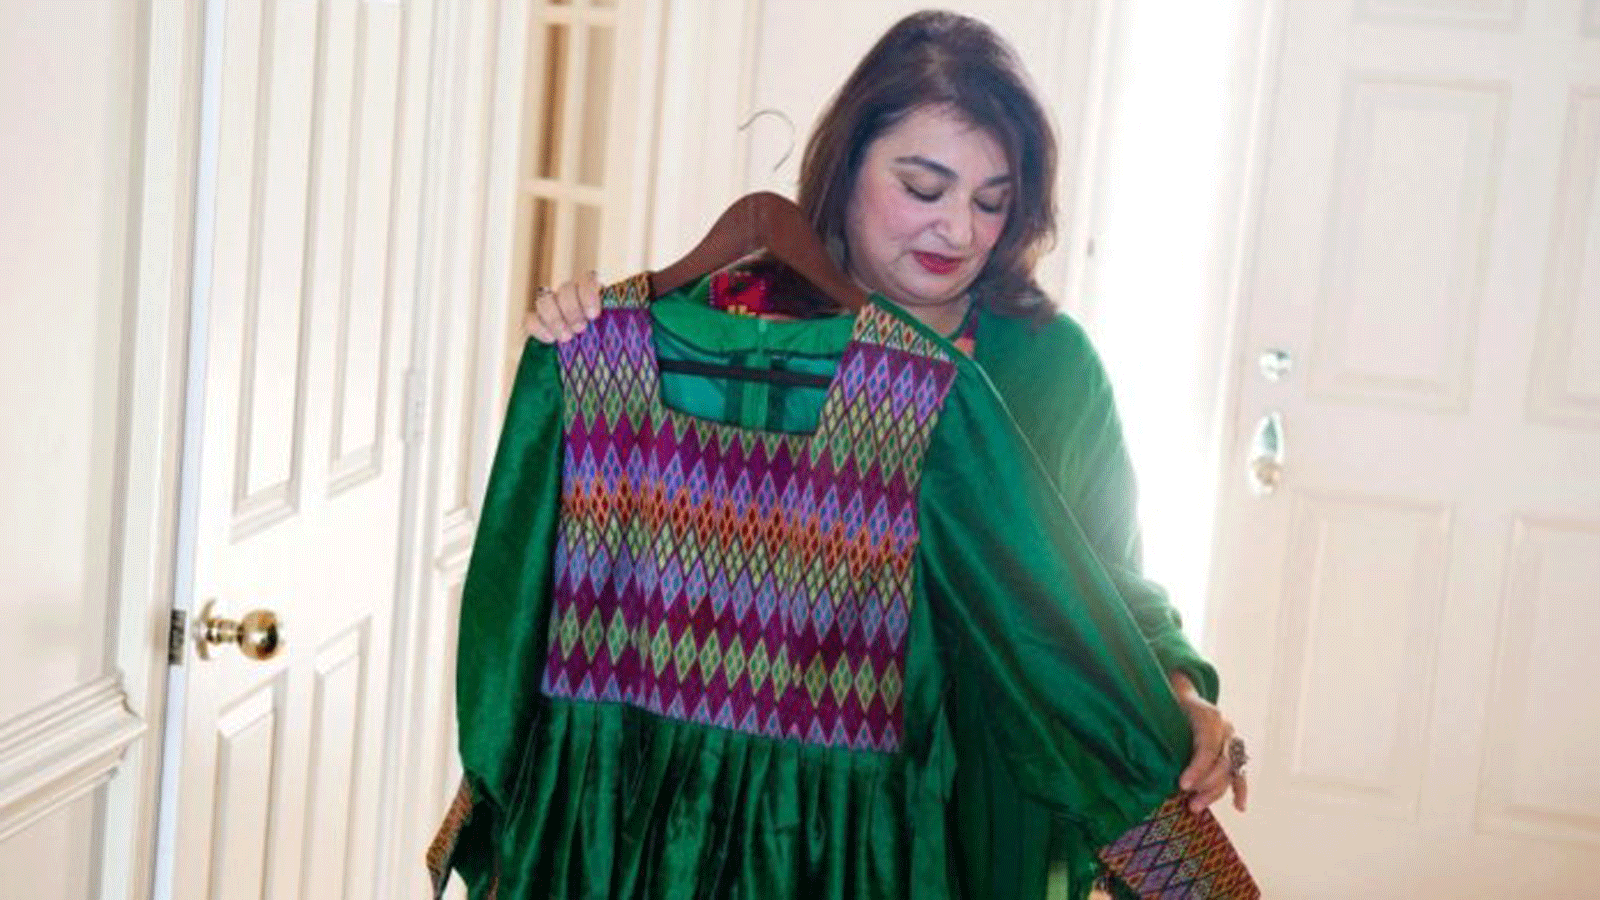 بهار جلالي، أكاديمية أفغانية تحمل الجنسية الأميركية، ترتدي الزي الأفغاني التقليدي في منزلها في جلينوود ، ماريلاند ، 24 أيلول/ سبتمبر 2021